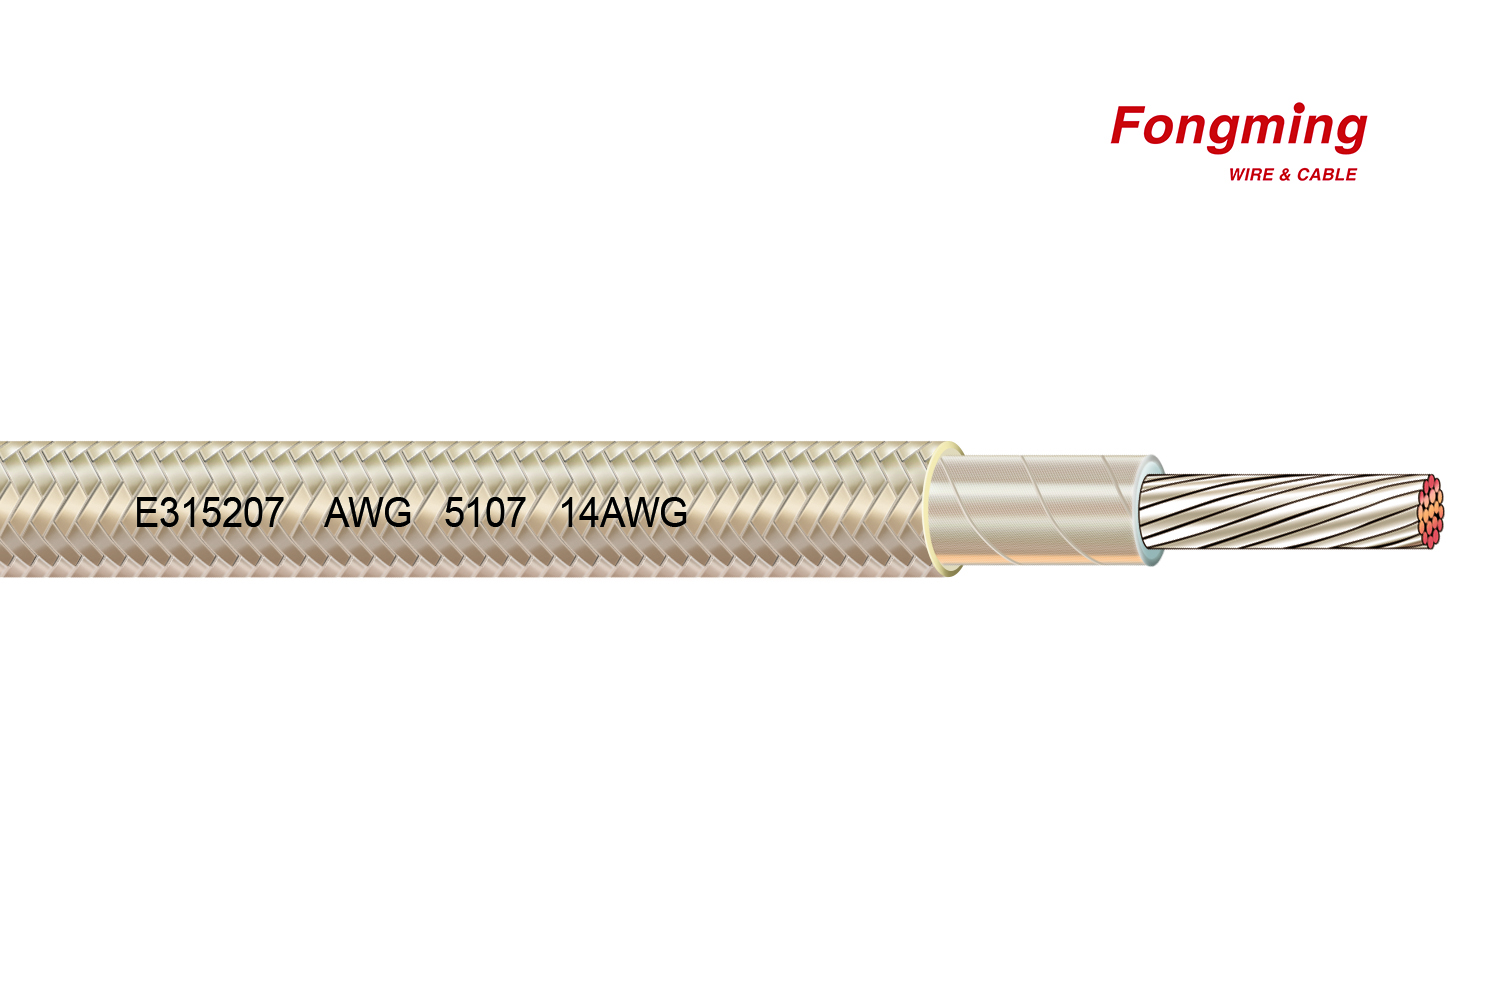 Cable de Yangzhou Fongming: ¿Conoces los nombres de los cables de mica de alta temperatura?